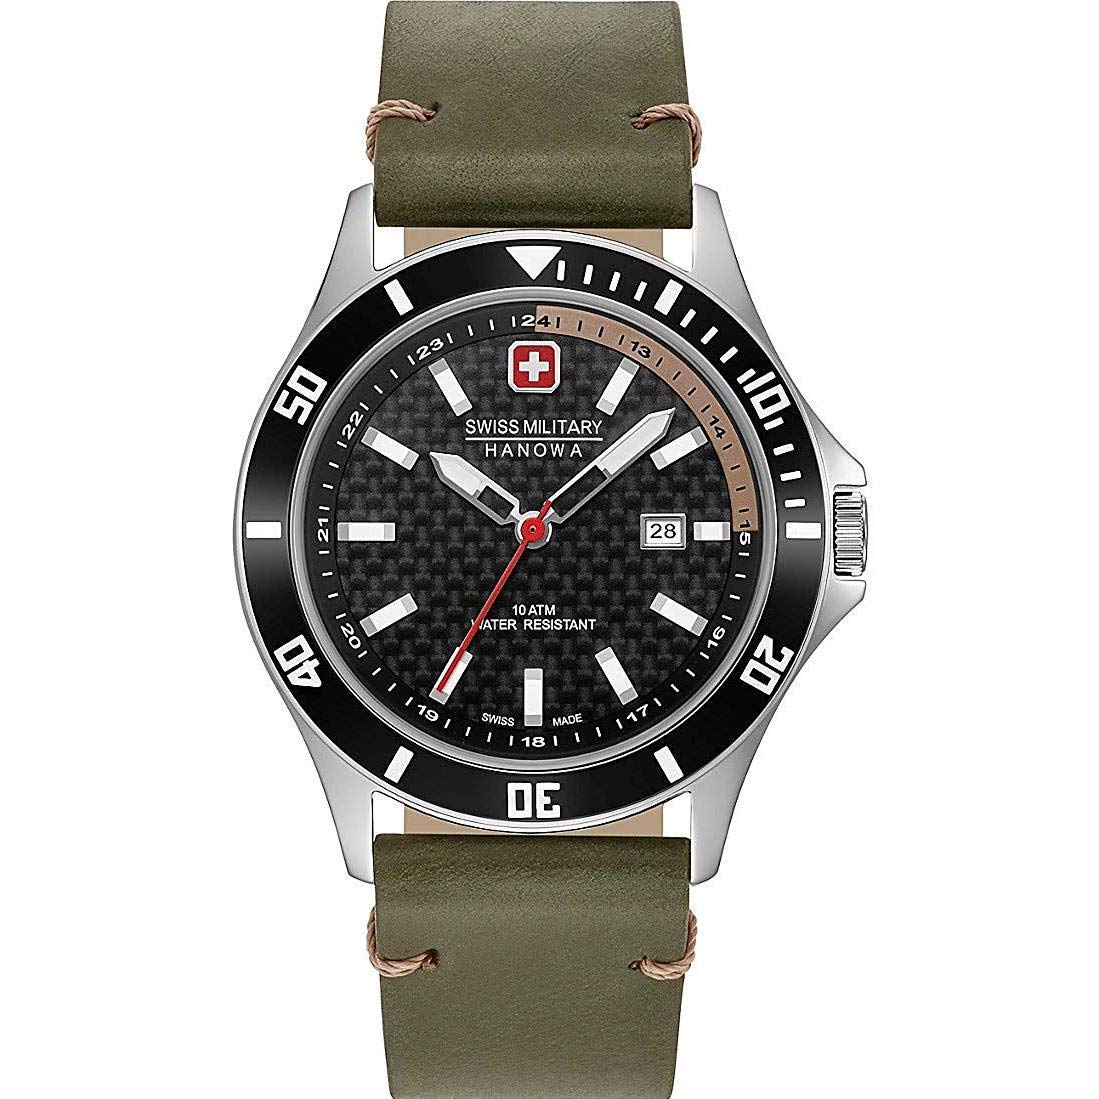 Swiss Military Hanowa Unisex Erwachsene Analog Quarz Uhr mit Edelstahl Armband 06-4161.2.04.007.14